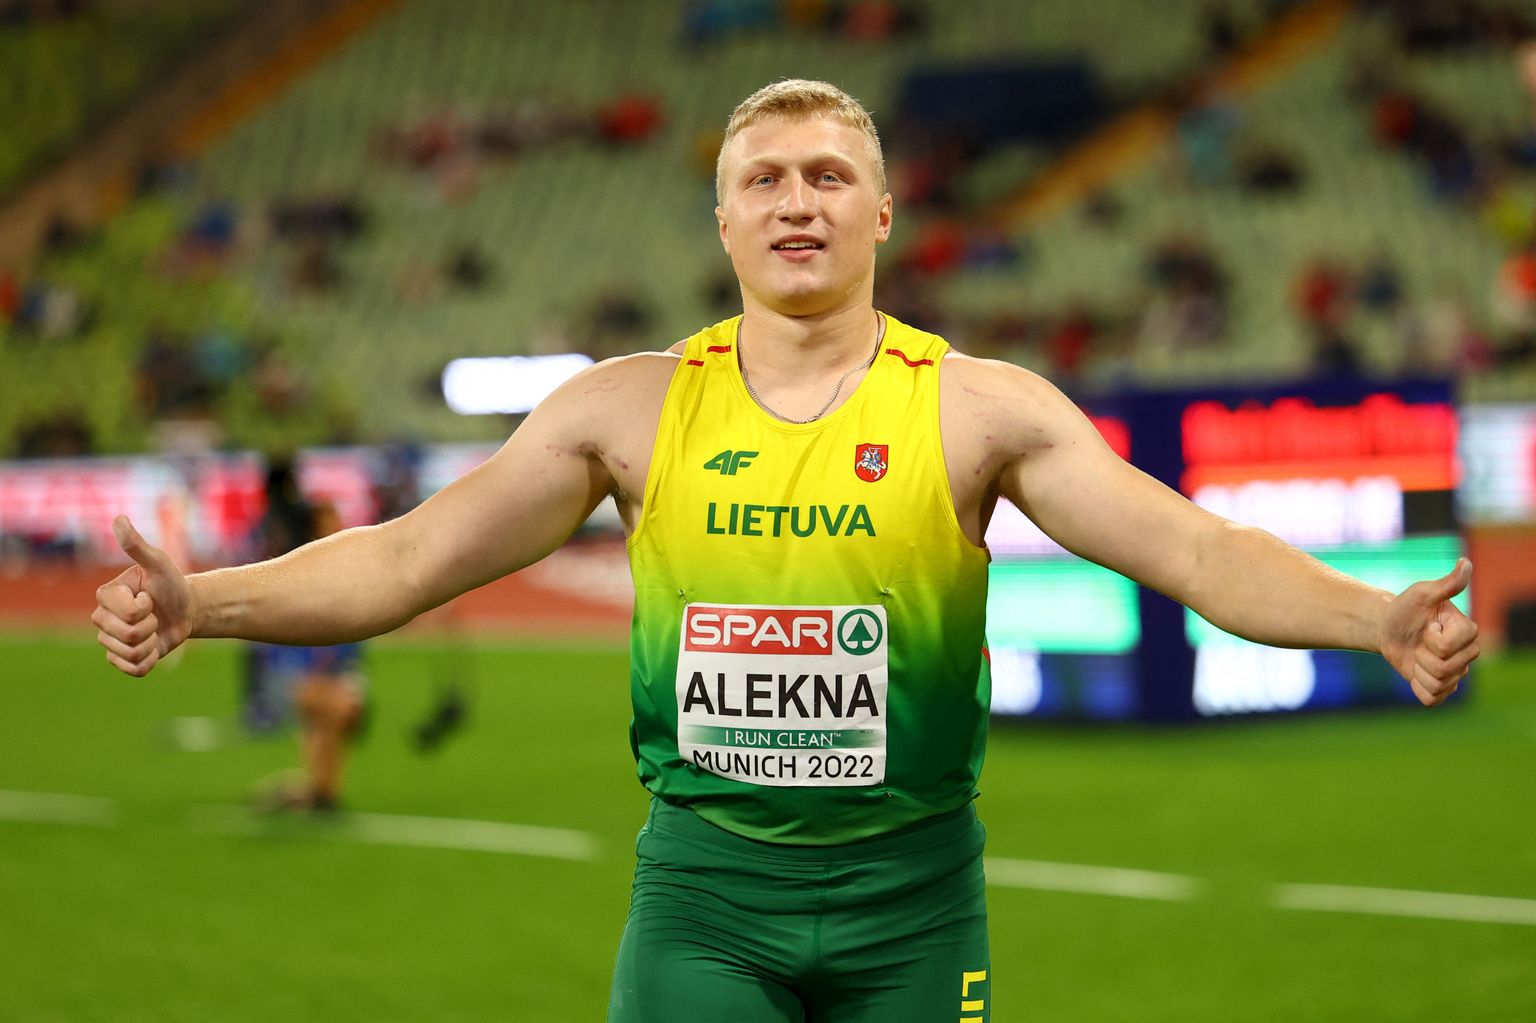 Mykolas Alekna tuli veidi üle kuu enne 20. sünnipäeva Euroopa meistriks.